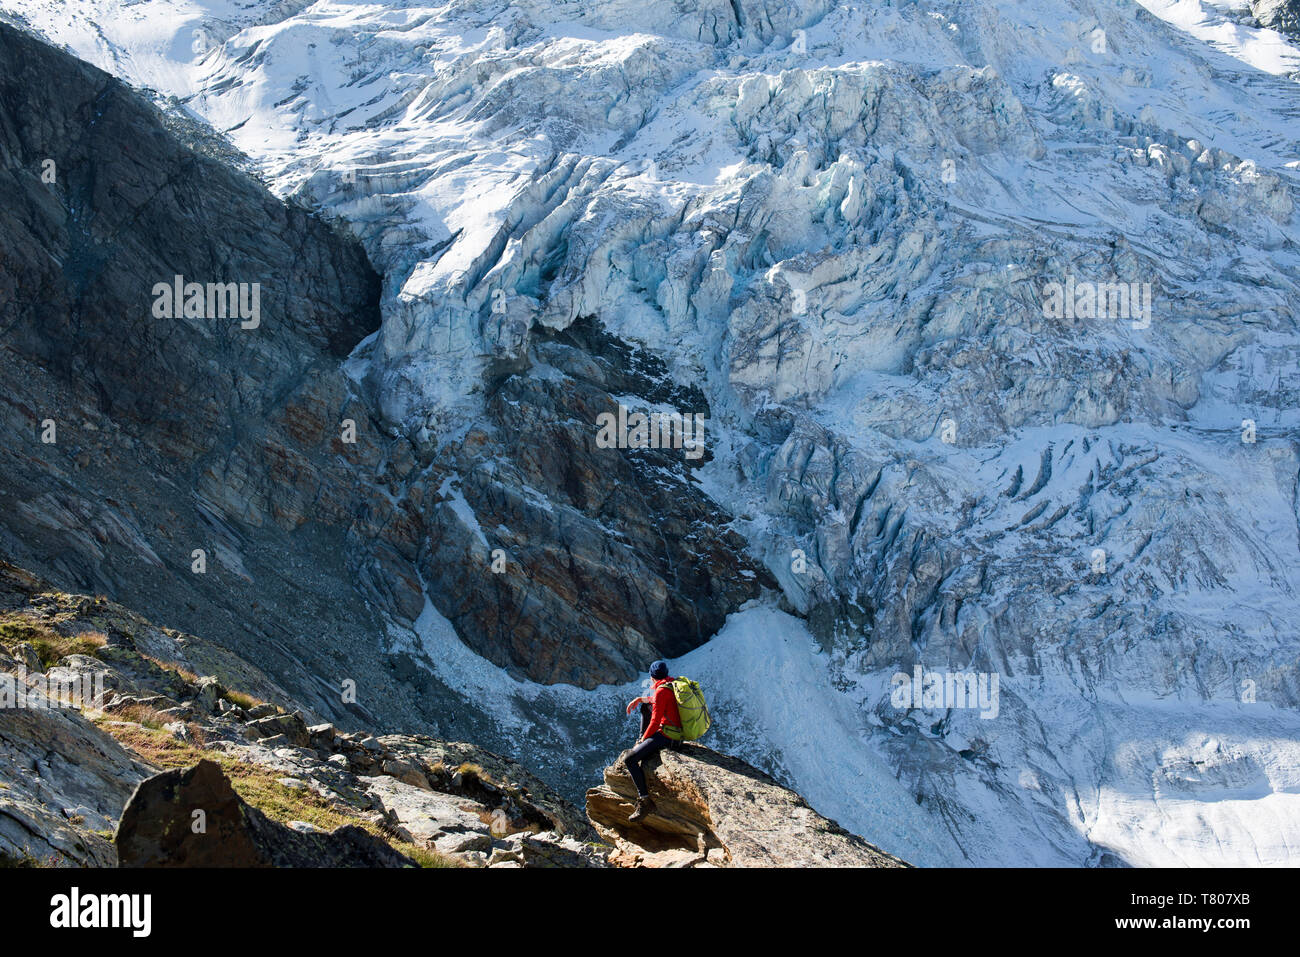 The classic Walkers Haute Route from Chamonix to Zermatt in the Swiss Alps, Switzerland, Europe Stock Photo